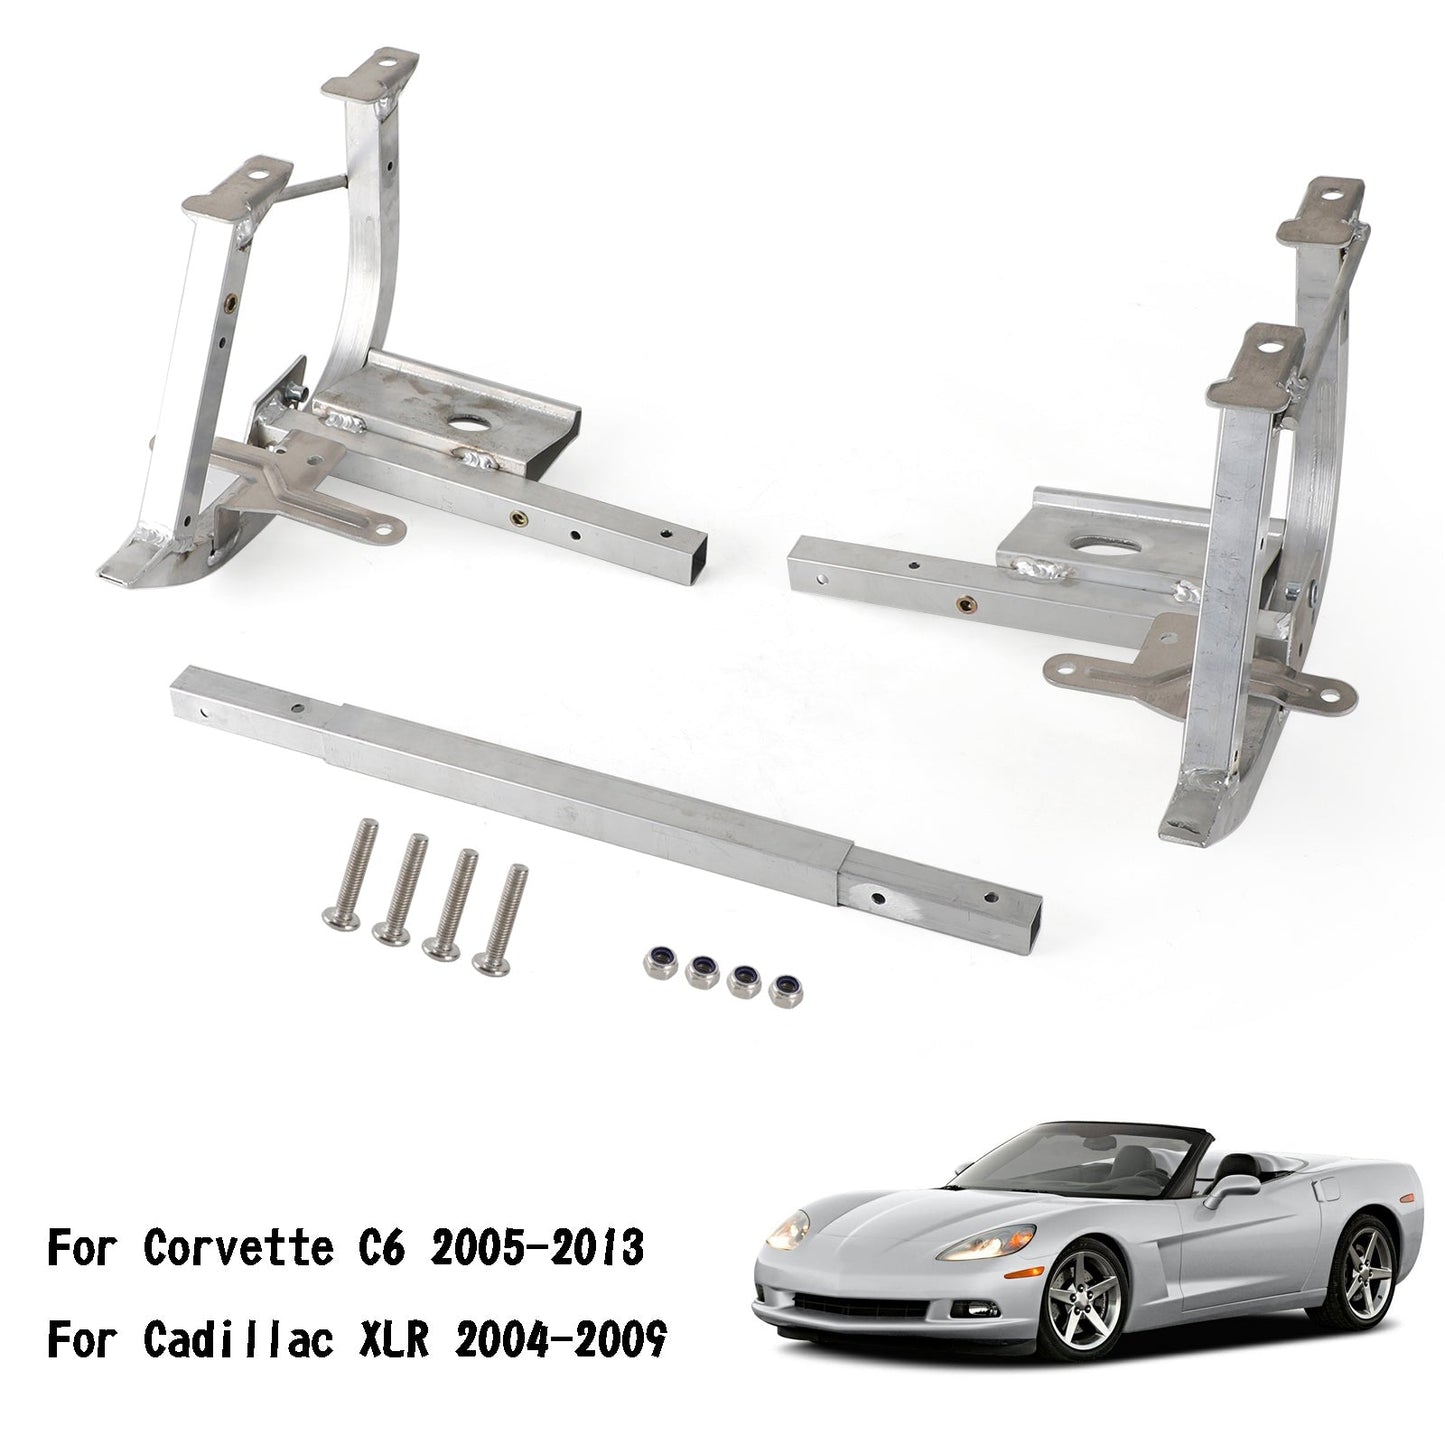 2005-2013 Corvette C6 plaque de support de noyau de radiateur inférieur plaque de protection 20939829